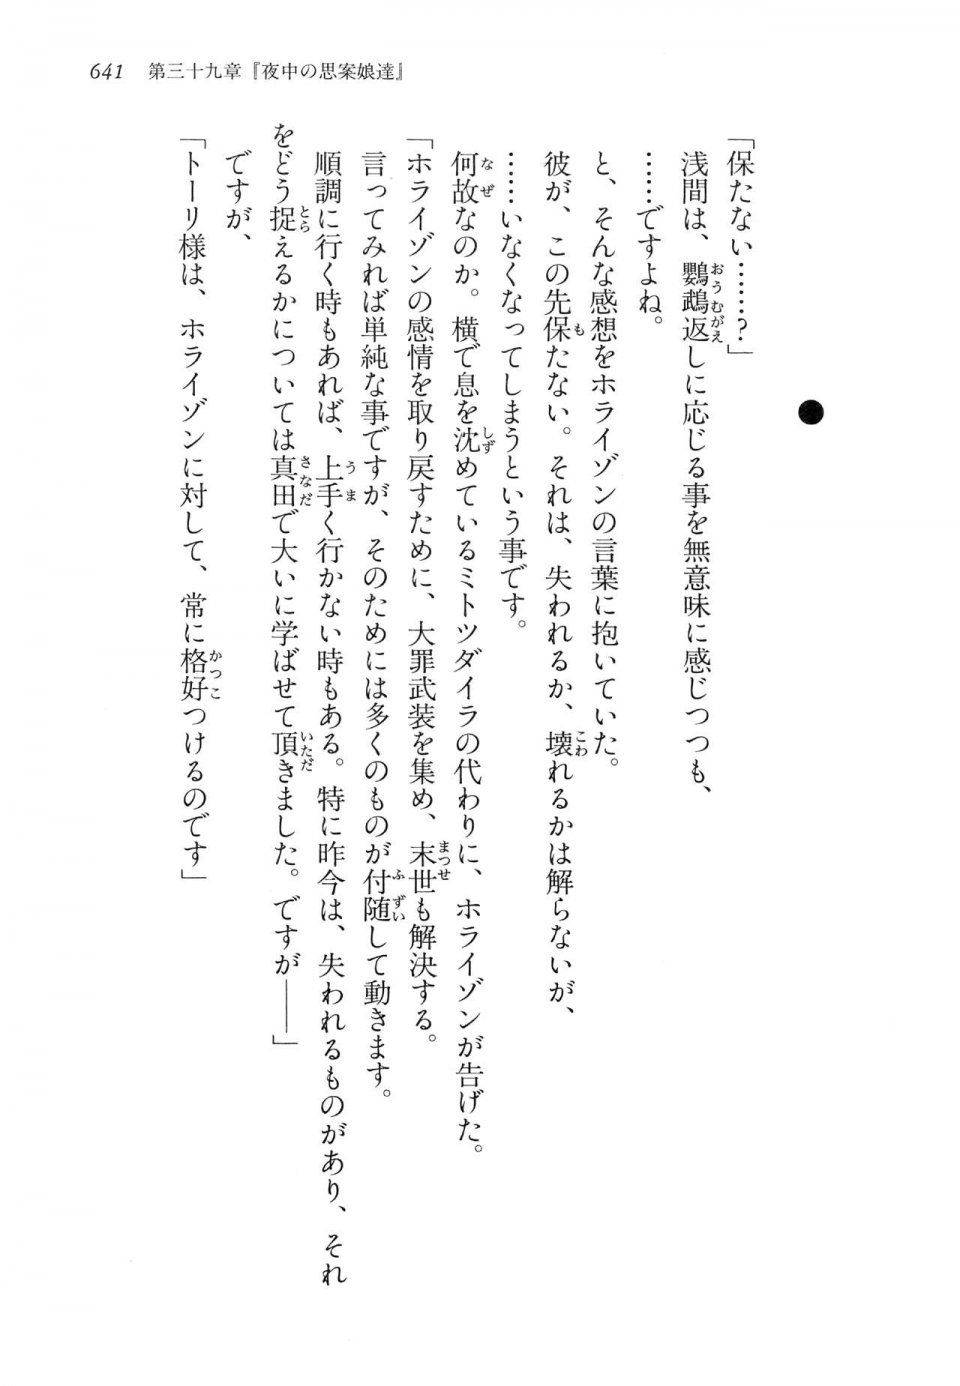 Kyoukai Senjou no Horizon LN Vol 14(6B) - Photo #641